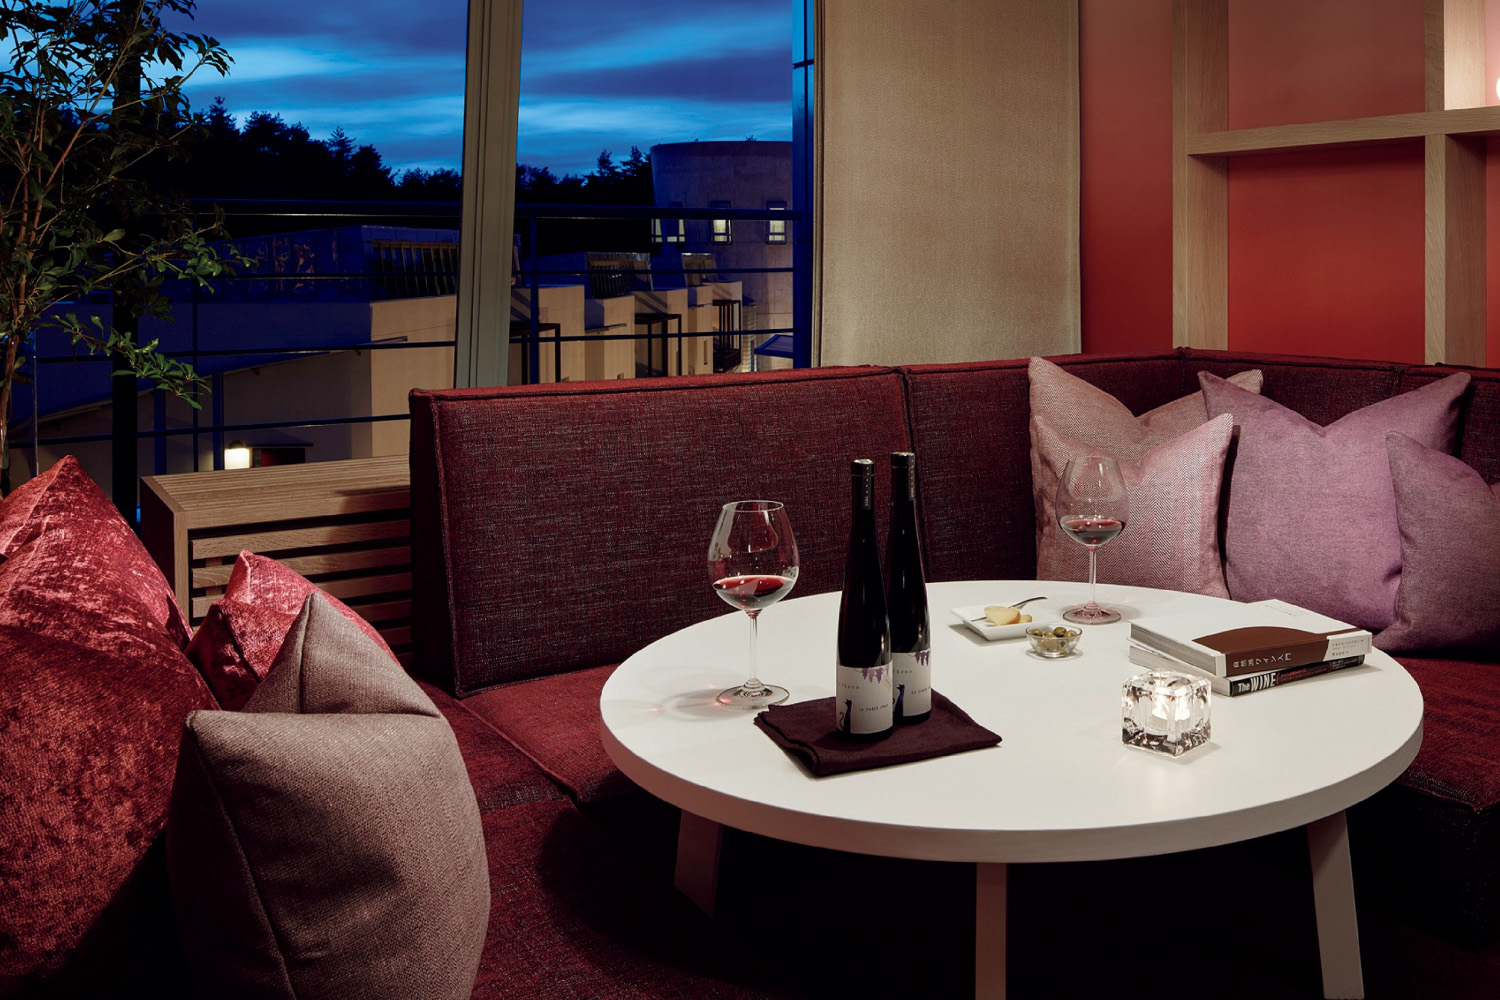 ワインスイートメゾネットの客室は、ボルドーカラーを基調にしたデザイン。リビングには、ゆったりとしたソファを配置。ワイングラスもそろっており、購入したワインを入れるワインセラーも。